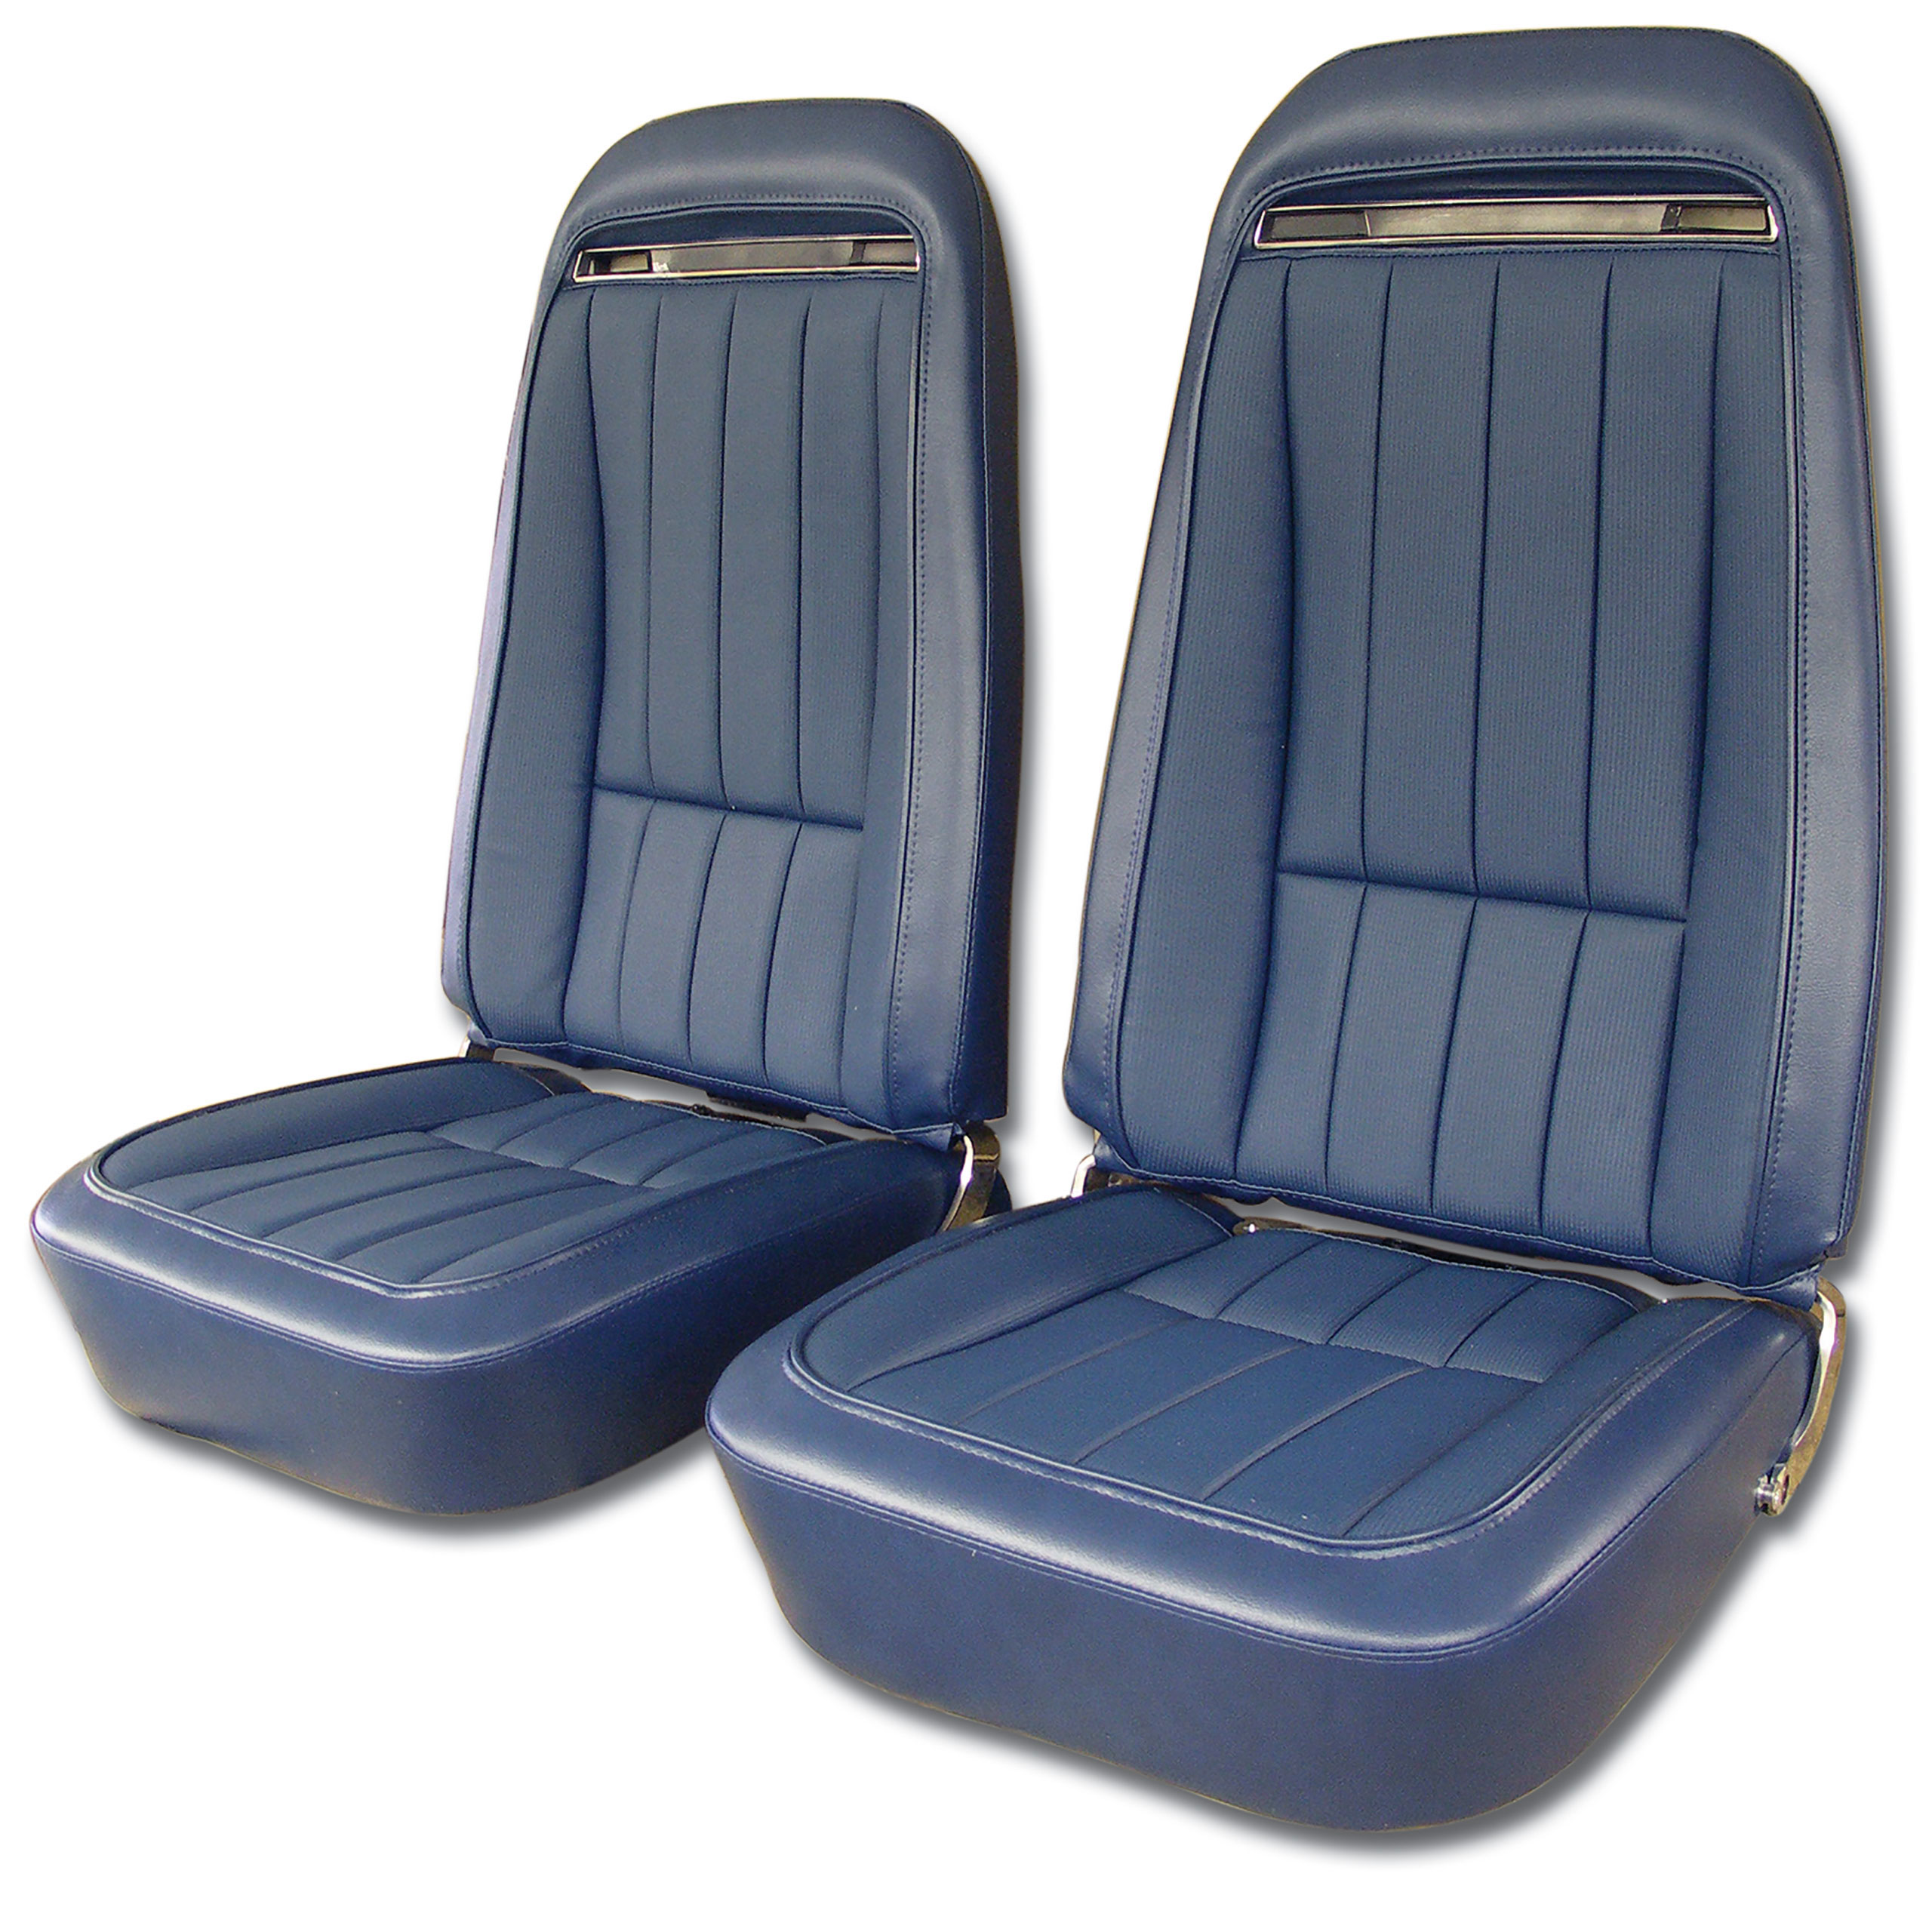 1971 Corvette C3 "Leather-Like" Vinyl Seat Covers Royal Blue CA-421247 